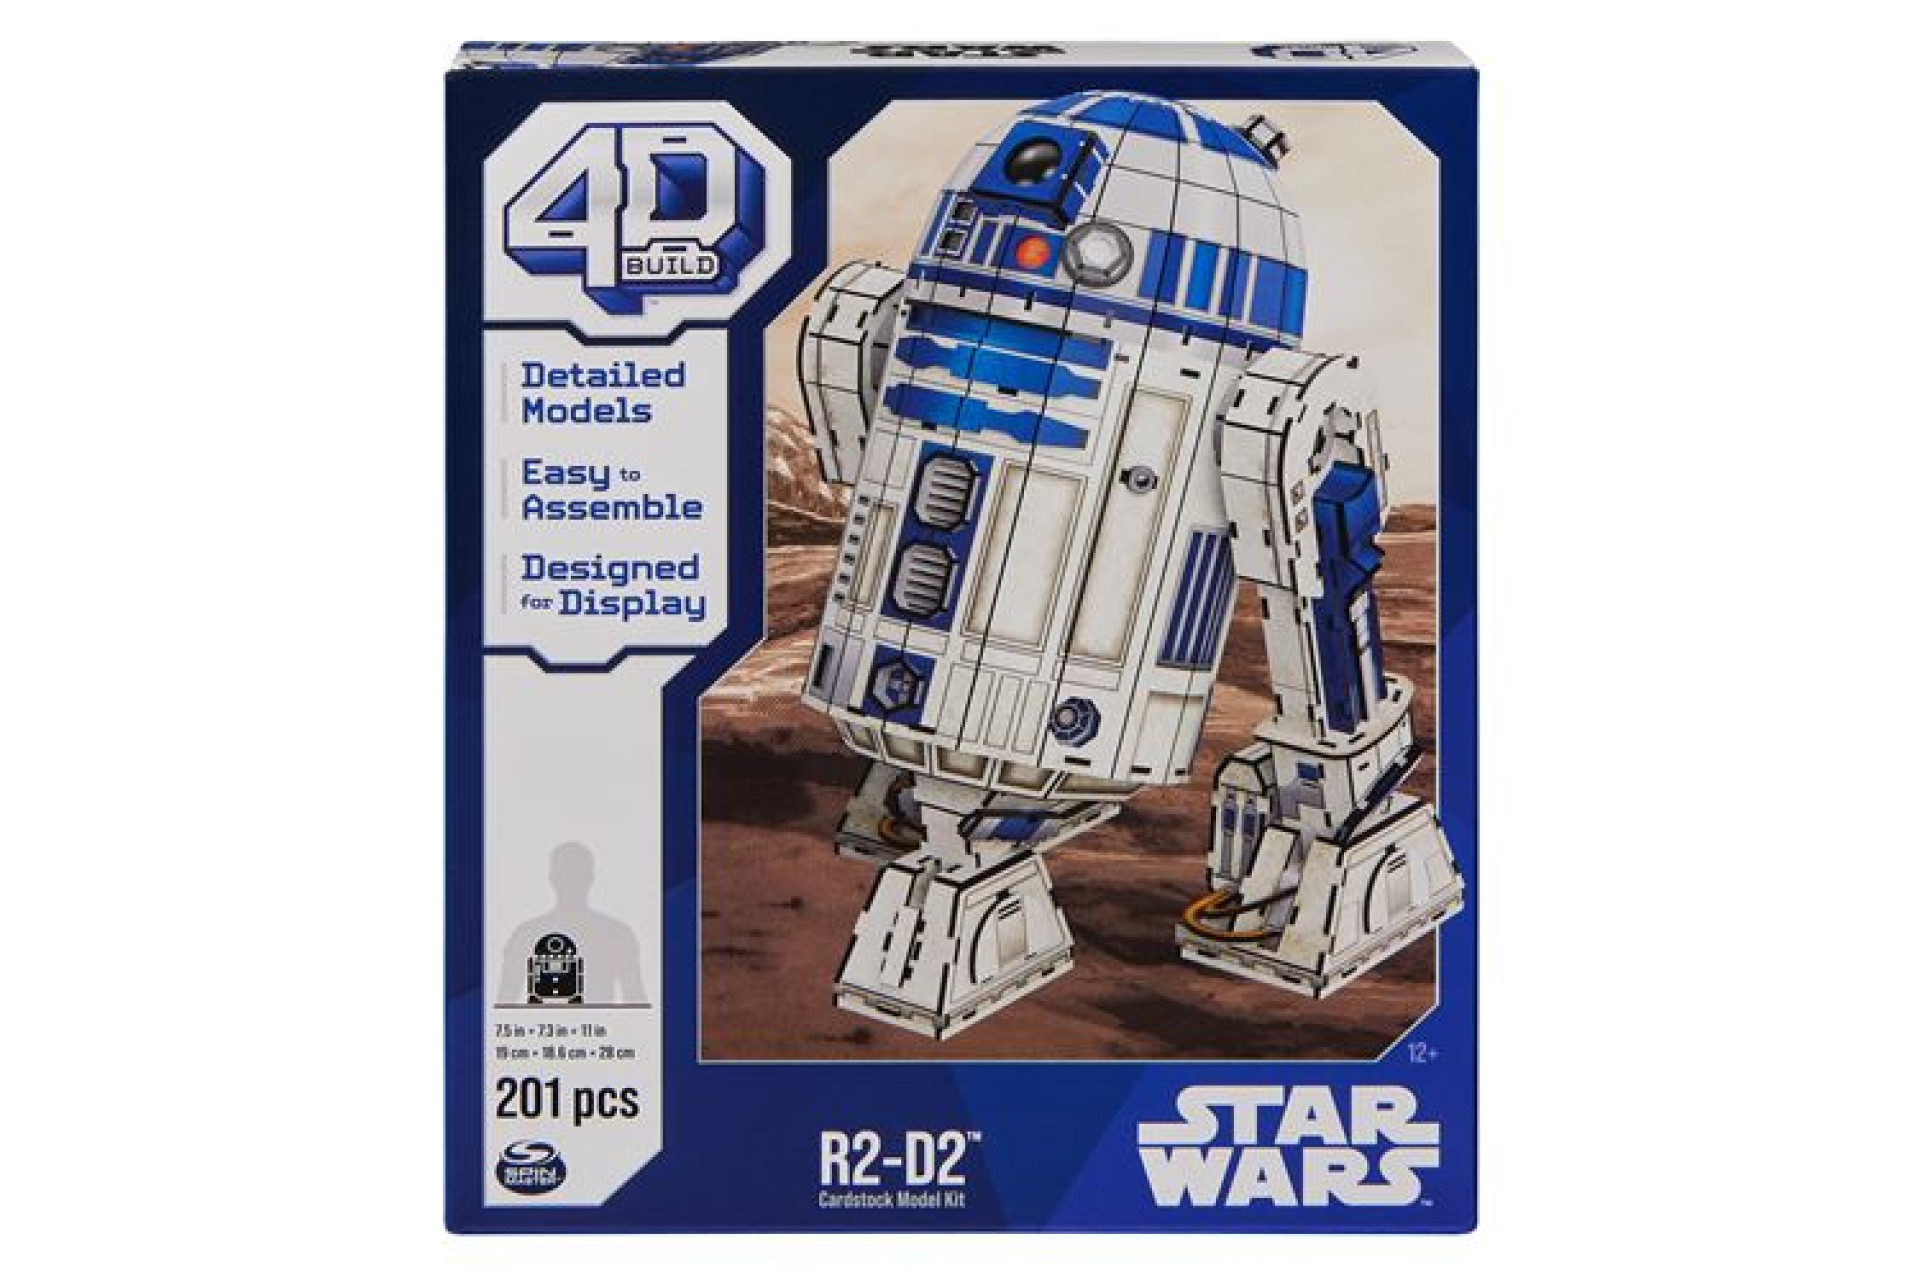 Acheter Puzzle 3D 4D Build R2-D2 Star Wars